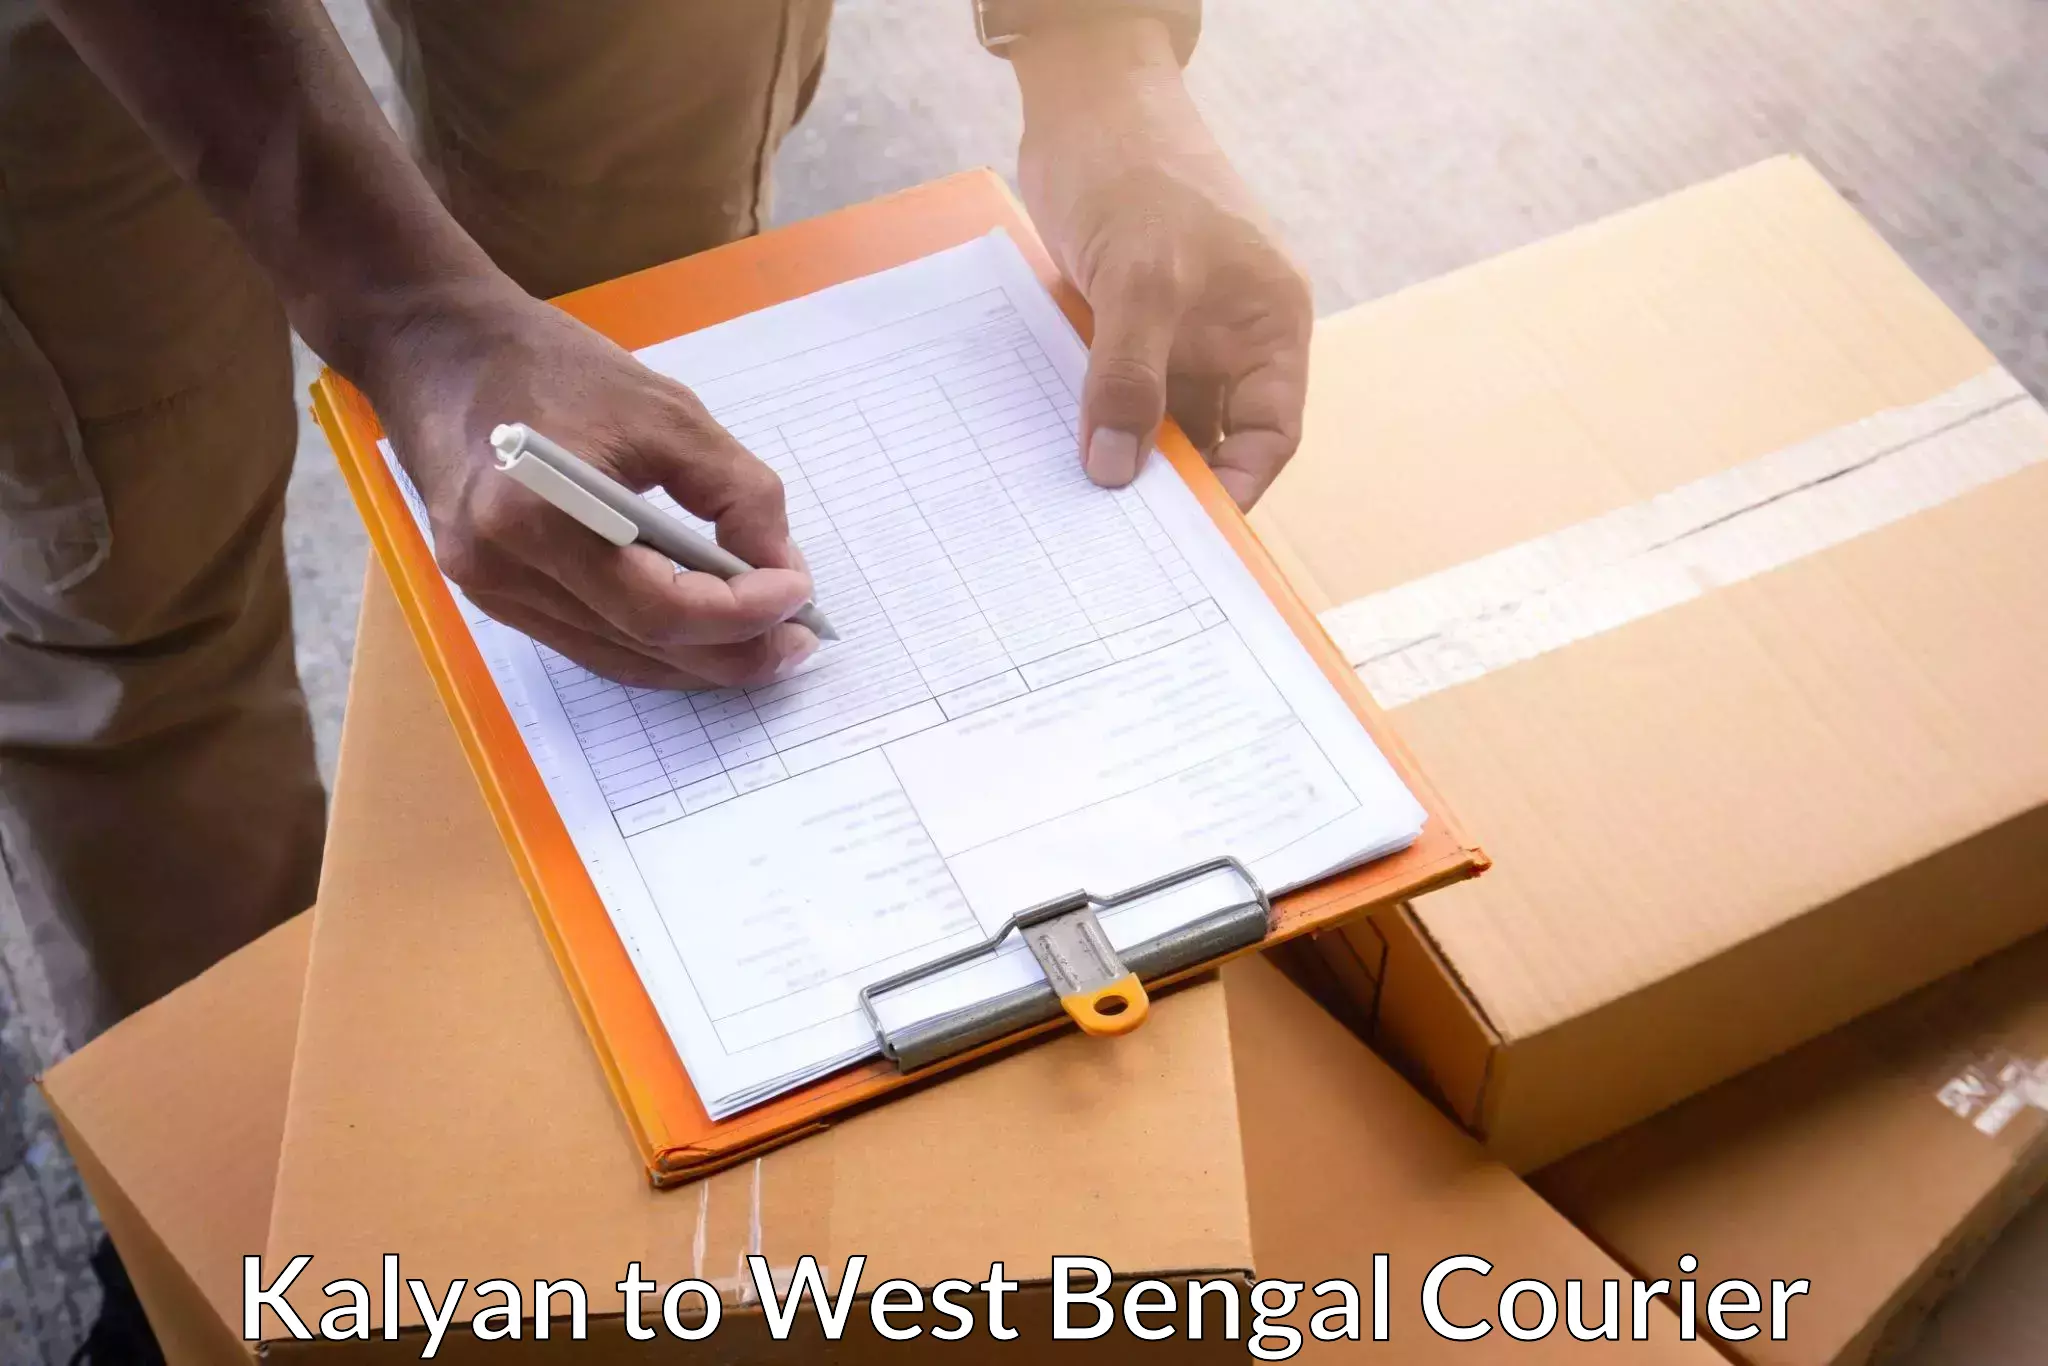 Urban courier service Kalyan to Khardah